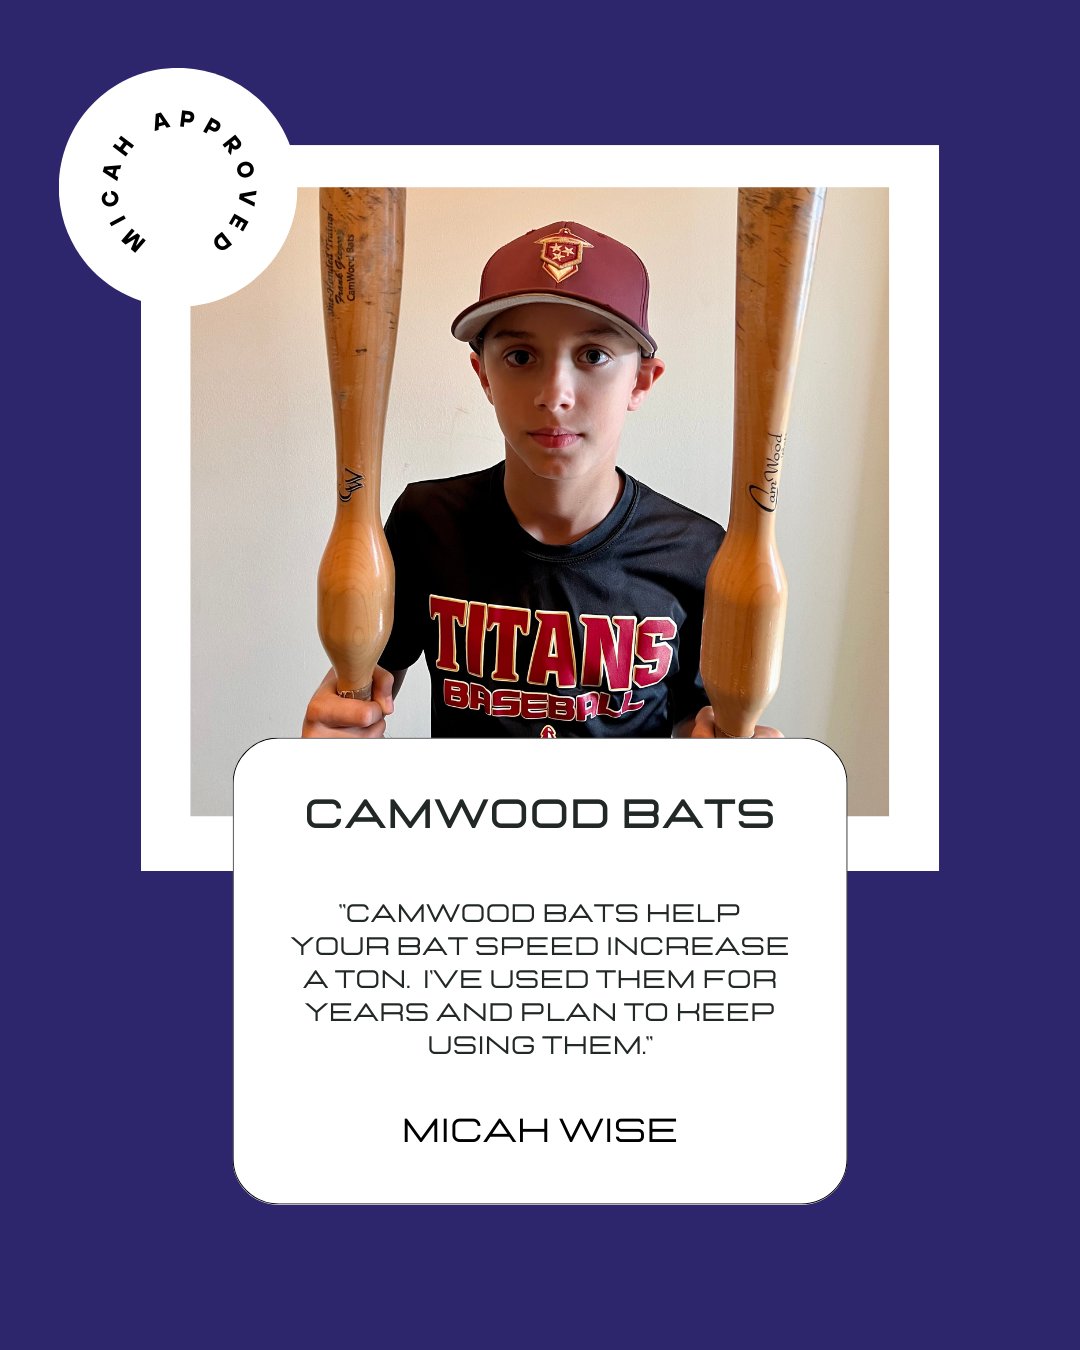 Camwood Bats Reviews